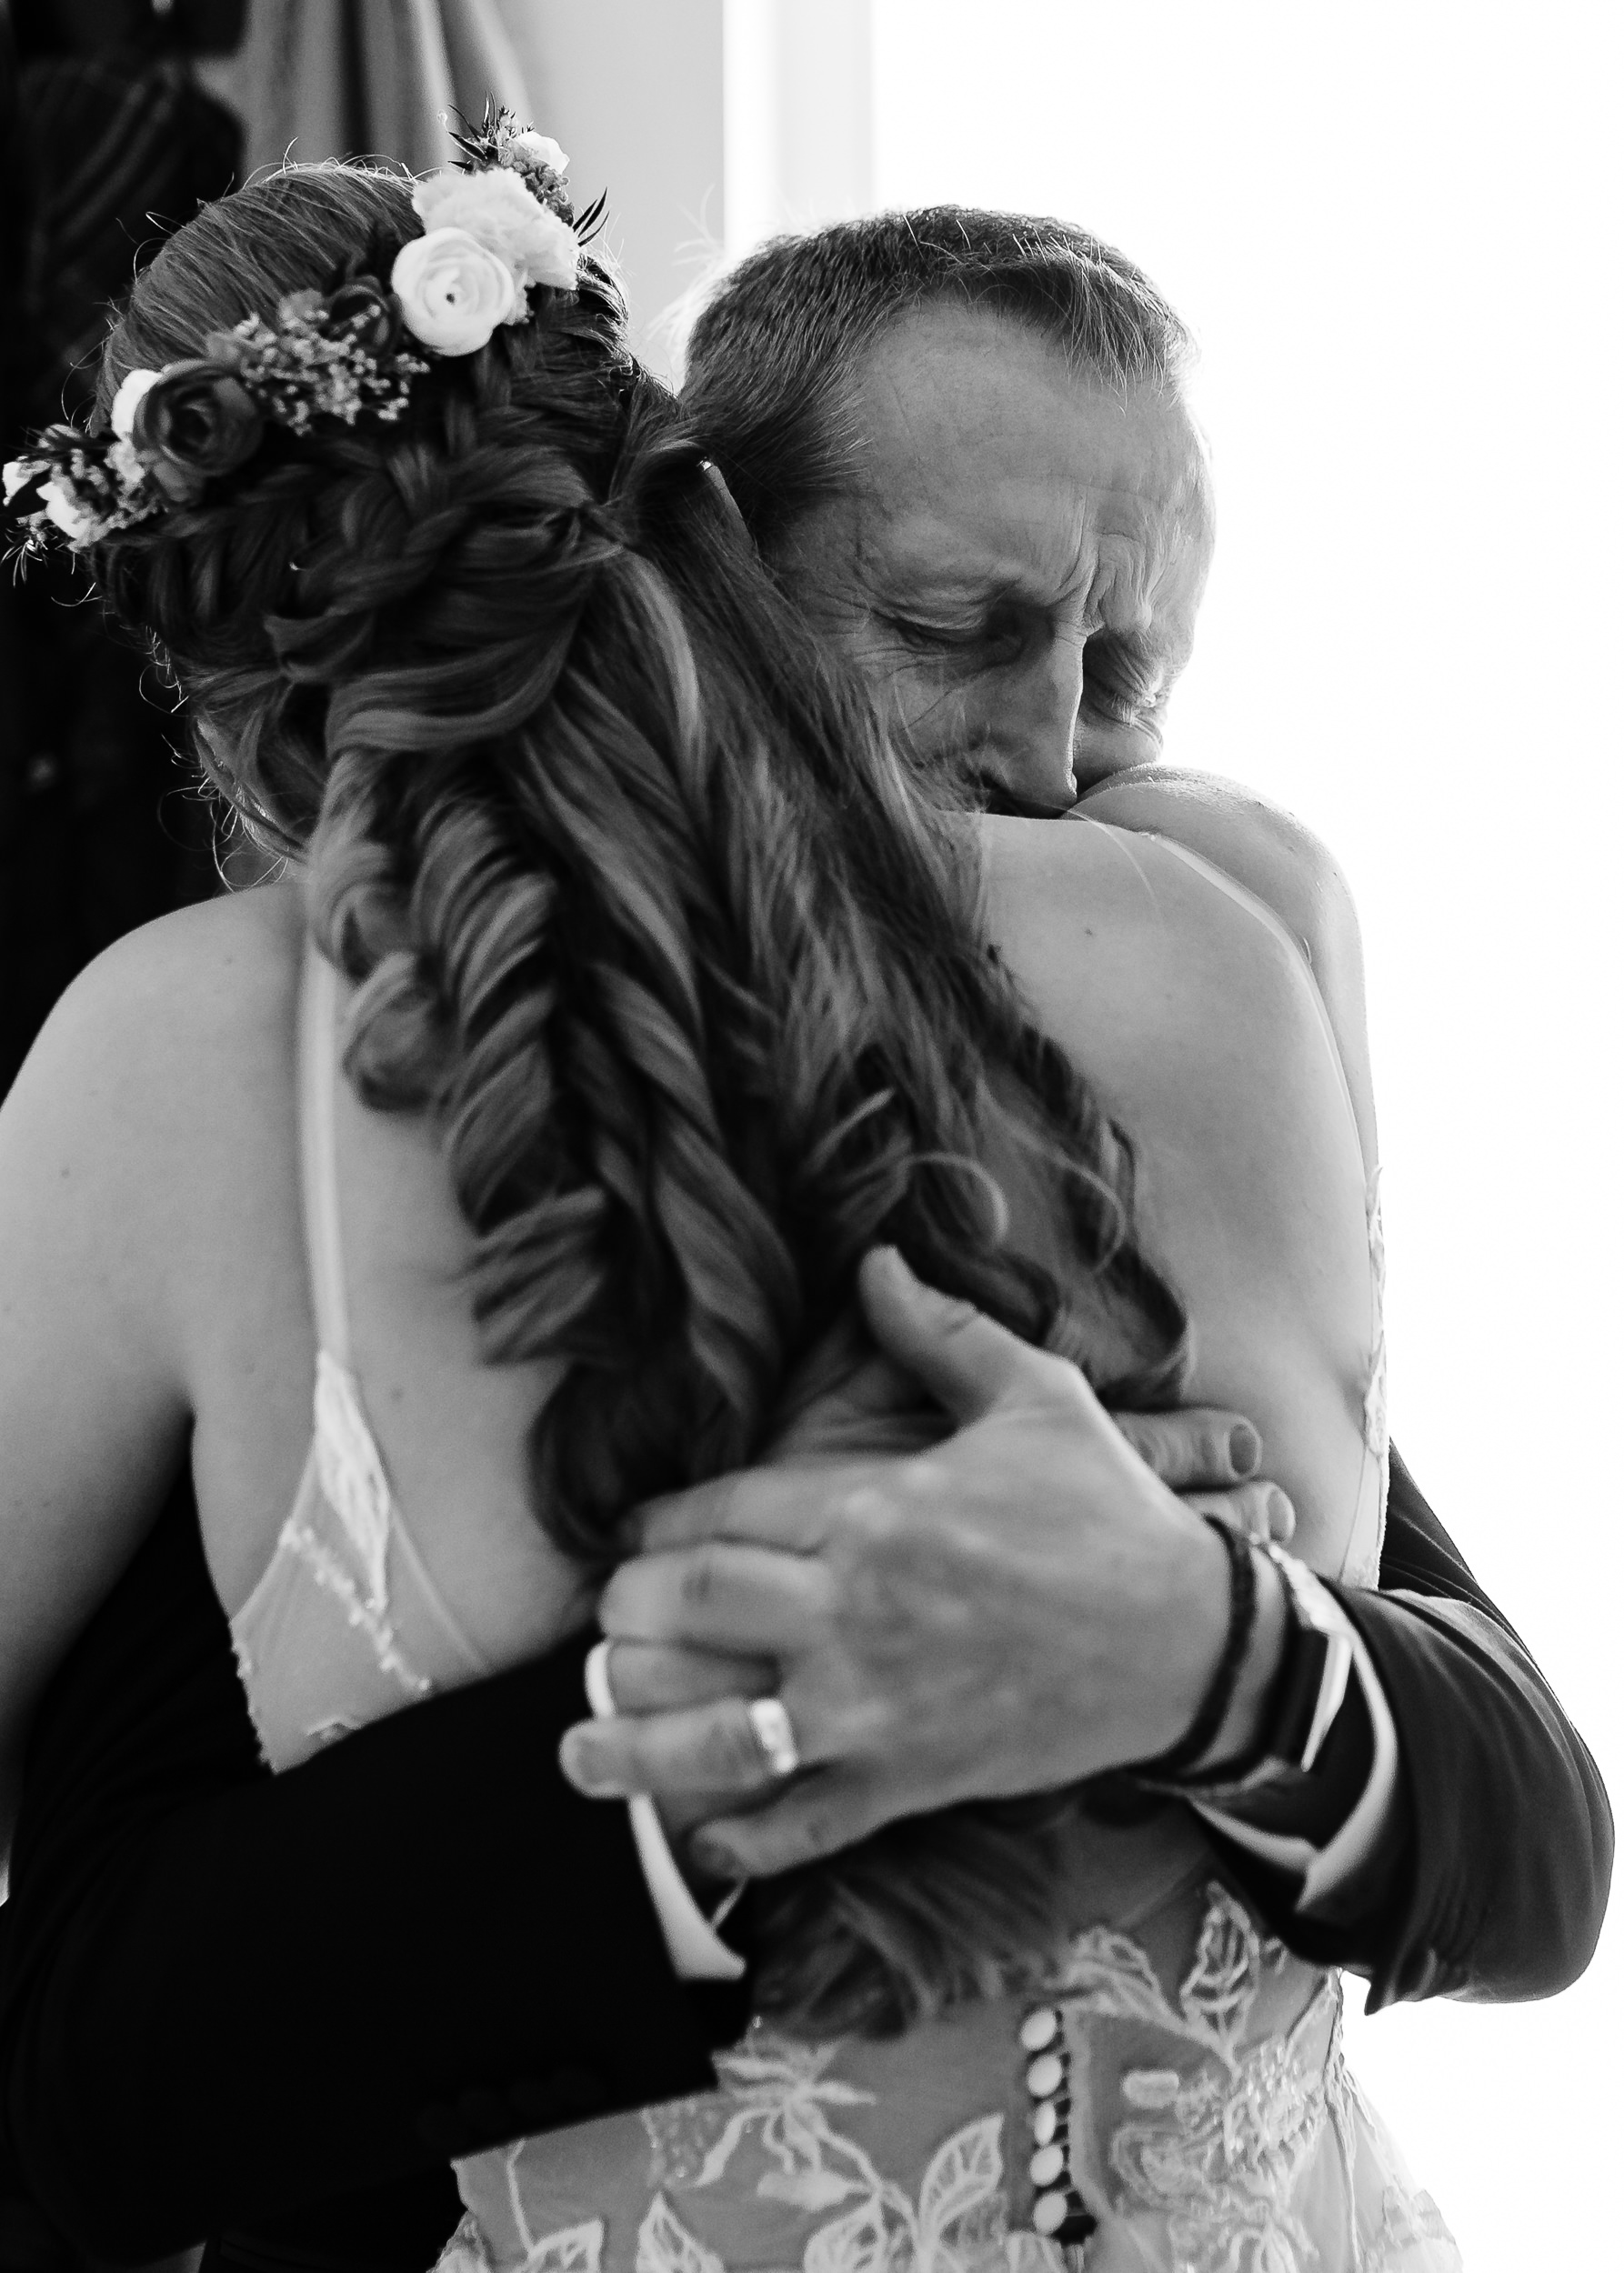 Dad hugging his daughter